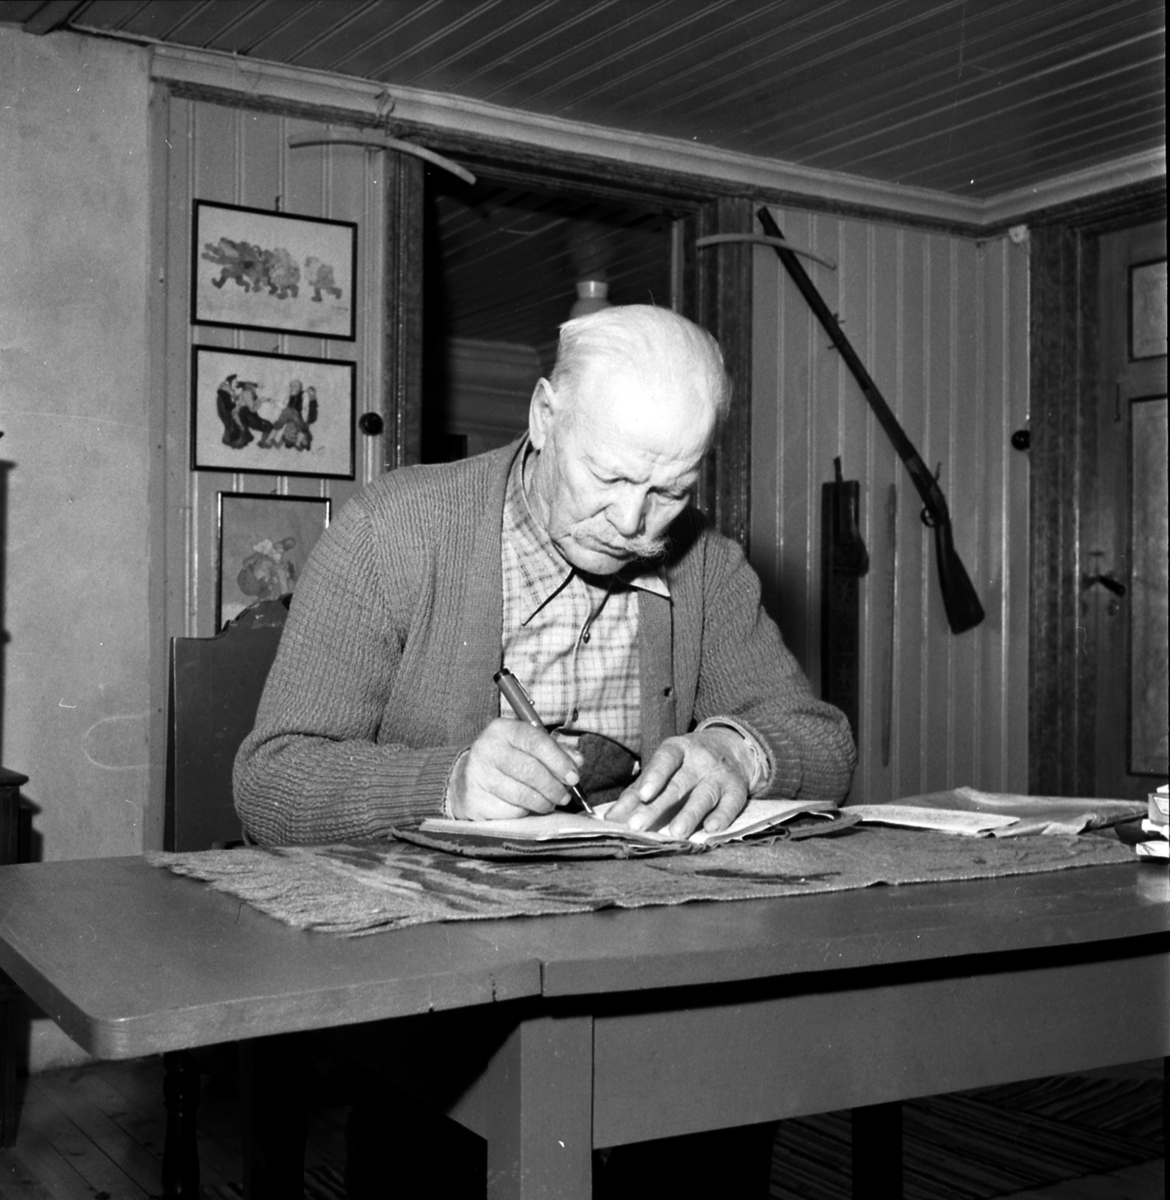 Nitahå-Jussi (til venstre) sitter ved bord og skriver, hjemme.
Nitahå-Jussi (født Johannes Johansson Oinonen 16. mai 1874 på Niitaho i Norra viggen, Värmland, død 13. februar 1964 i Torsby) var en skogsfinsk vandrer.